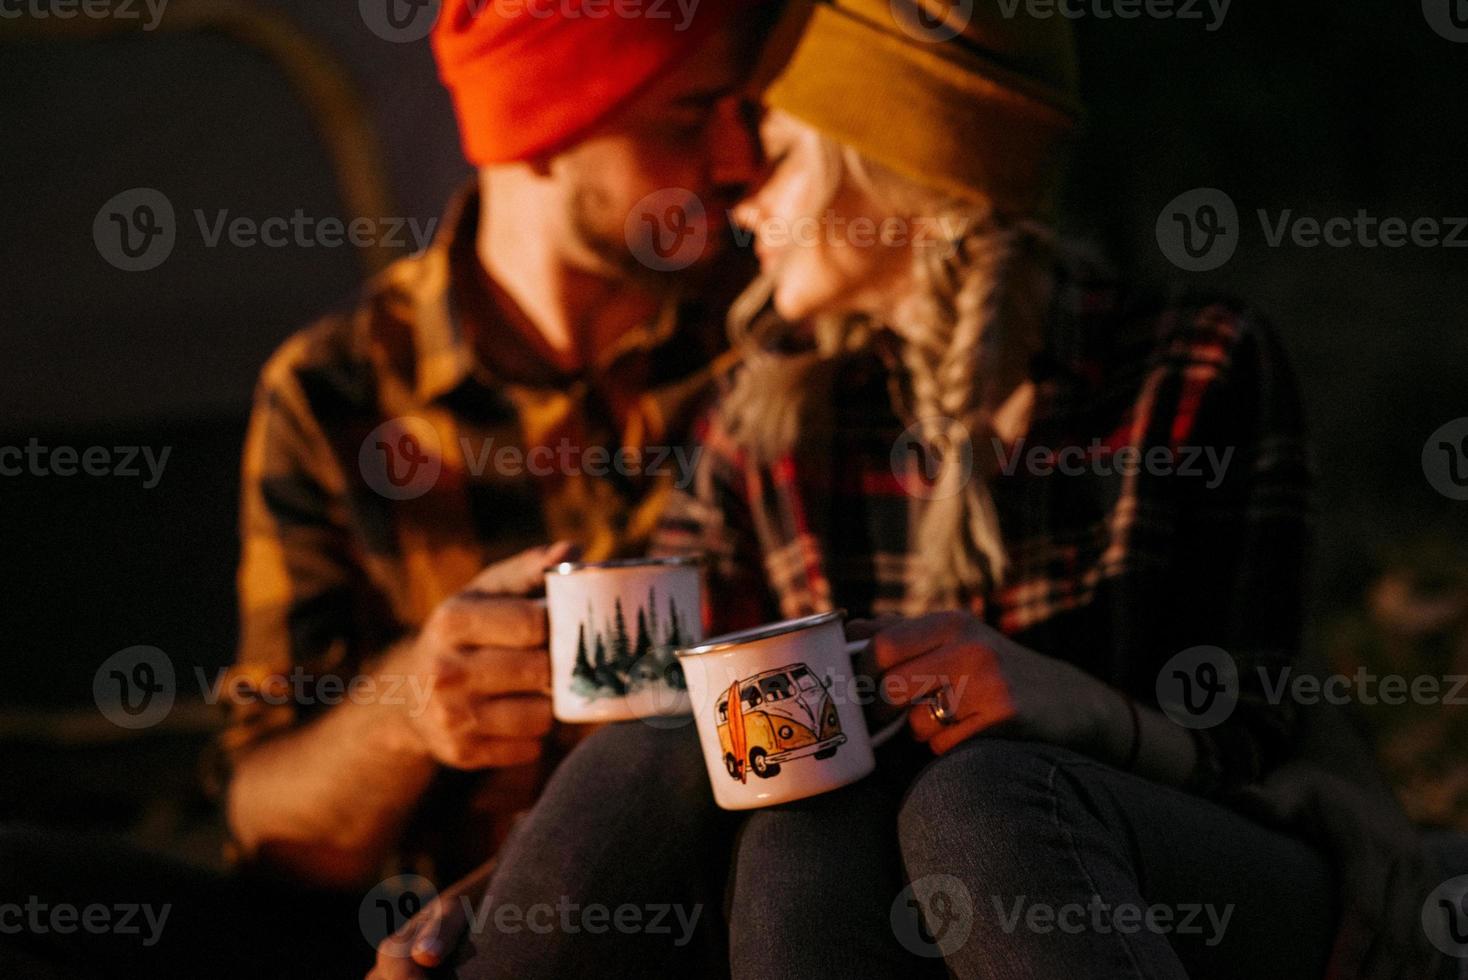 jeune couple, un mec et une fille en chapeaux tricotés lumineux se sont arrêtés dans un camping photo